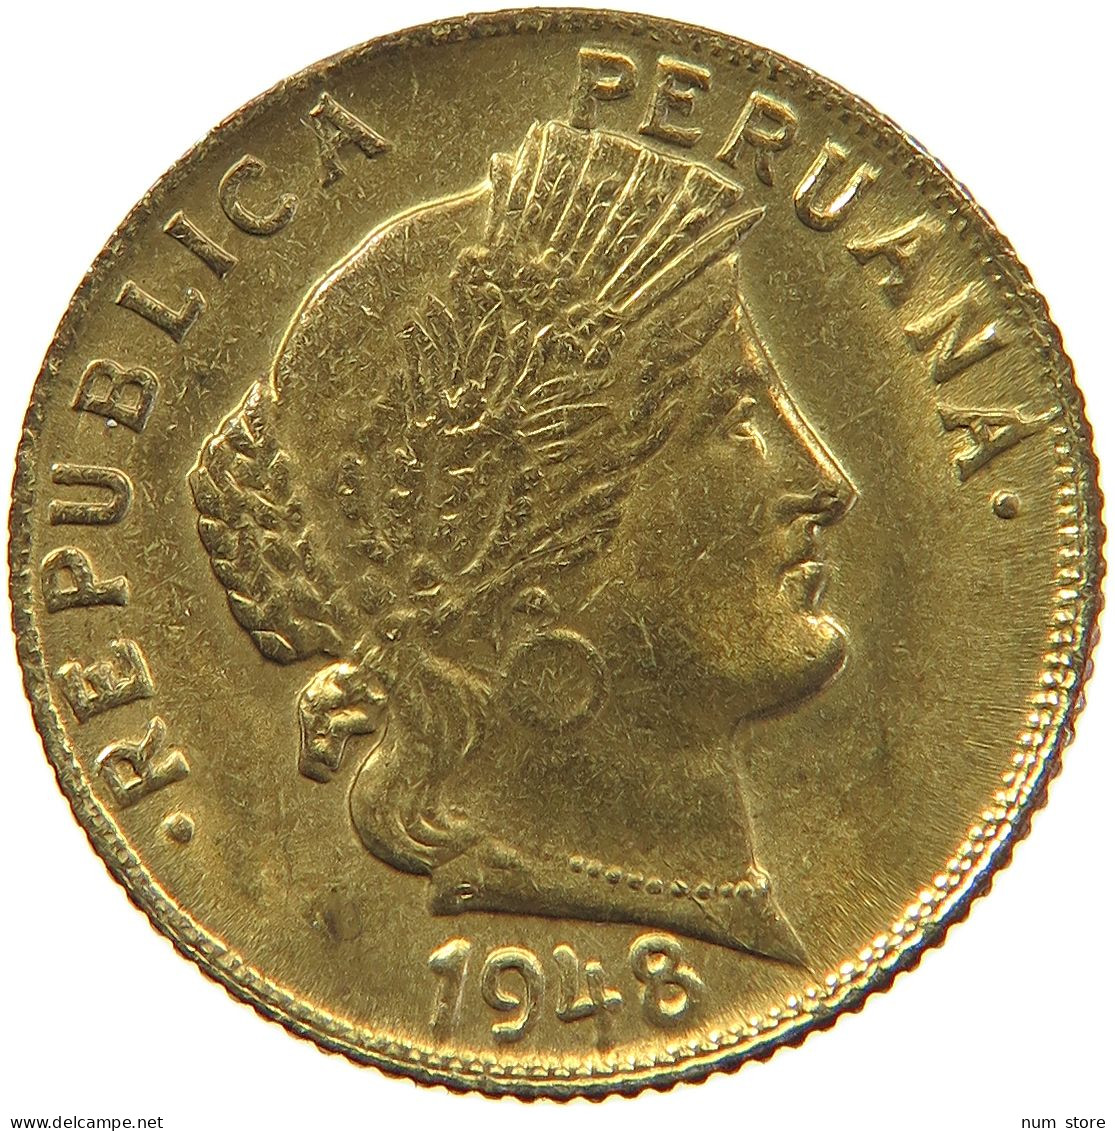 PERU 10 CENTAVOS 1948 AUNC #t030 0129 - Peru